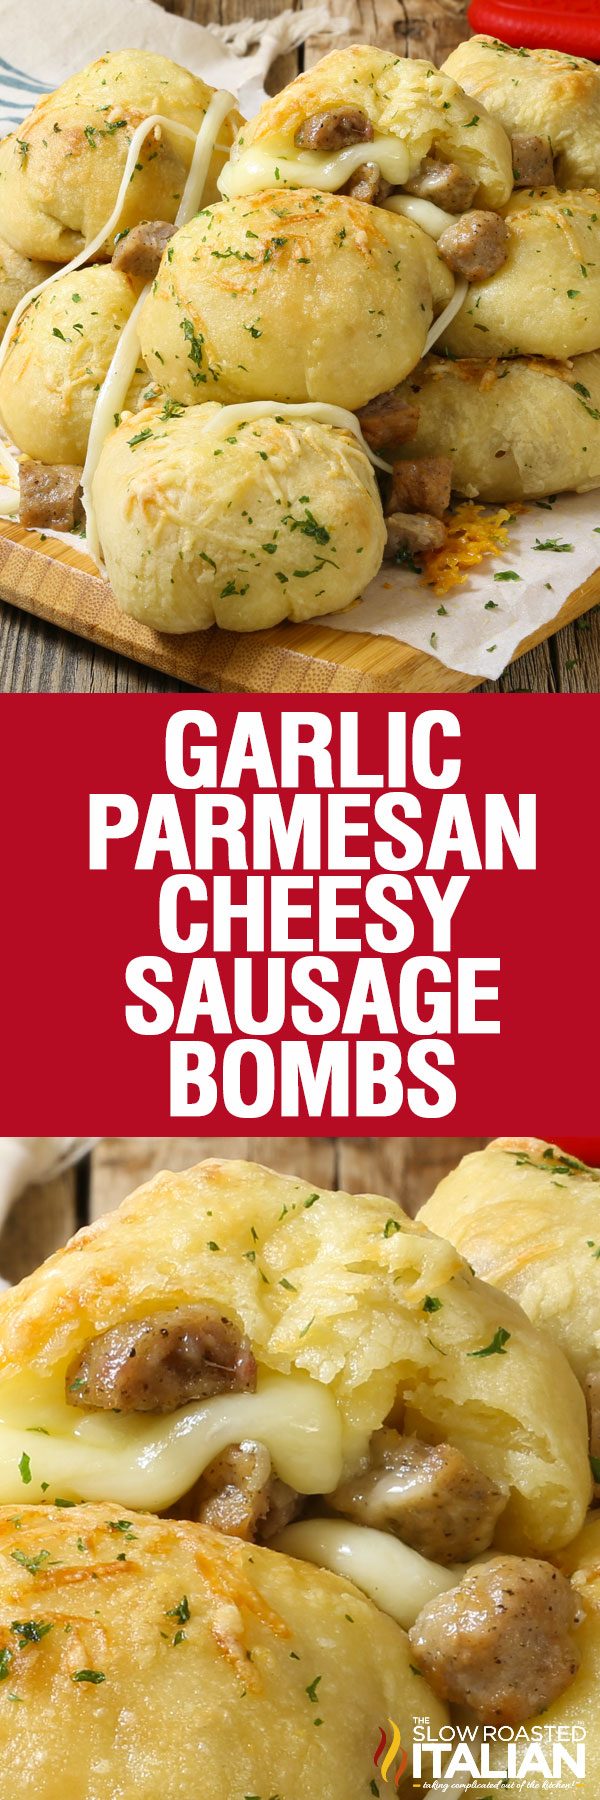 garlic-parmesan-cheesy-sausage-bombs-pin-6645525